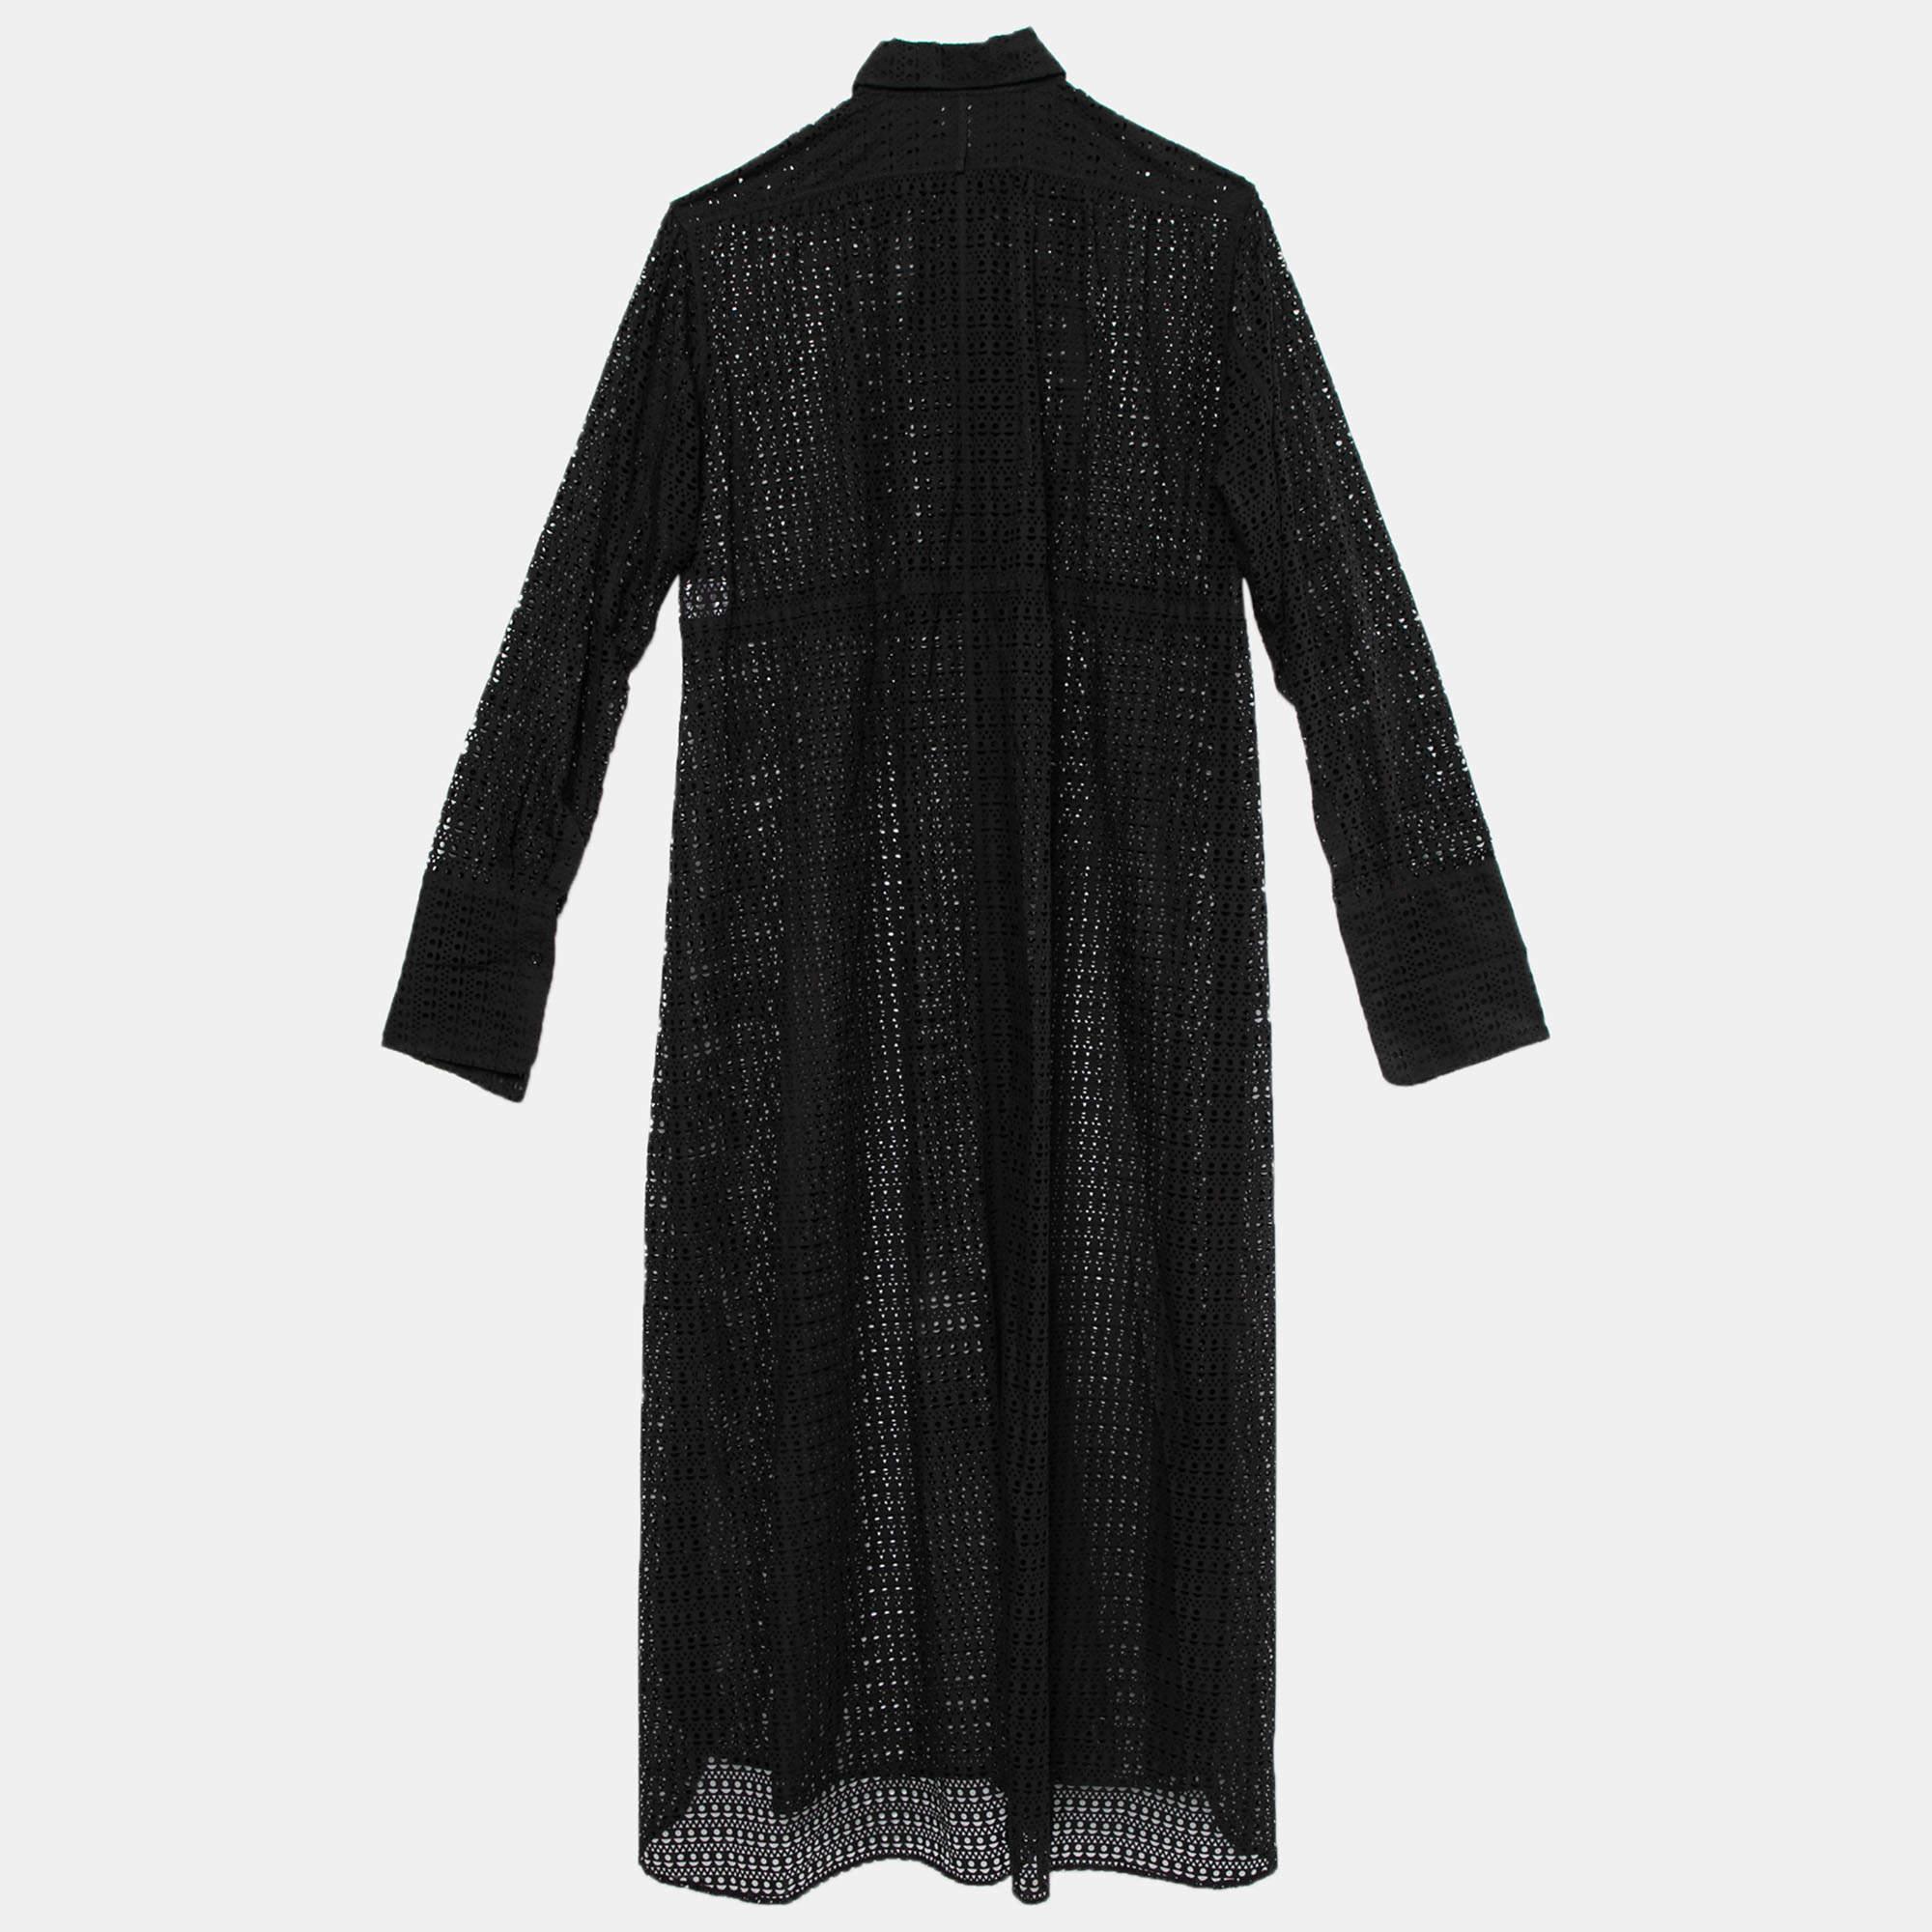 Mit diesem stilvollen Kleid aus dem Hause Alaia setzen Sie ein elegantes Modestatement. Dieses Kleid aus schwarzem, gemustertem Baumwollstoff ist mit lasergeschnittenen Details, Kragen und geknöpften Verschlüssen versehen. Nehmen Sie dieses Kleid